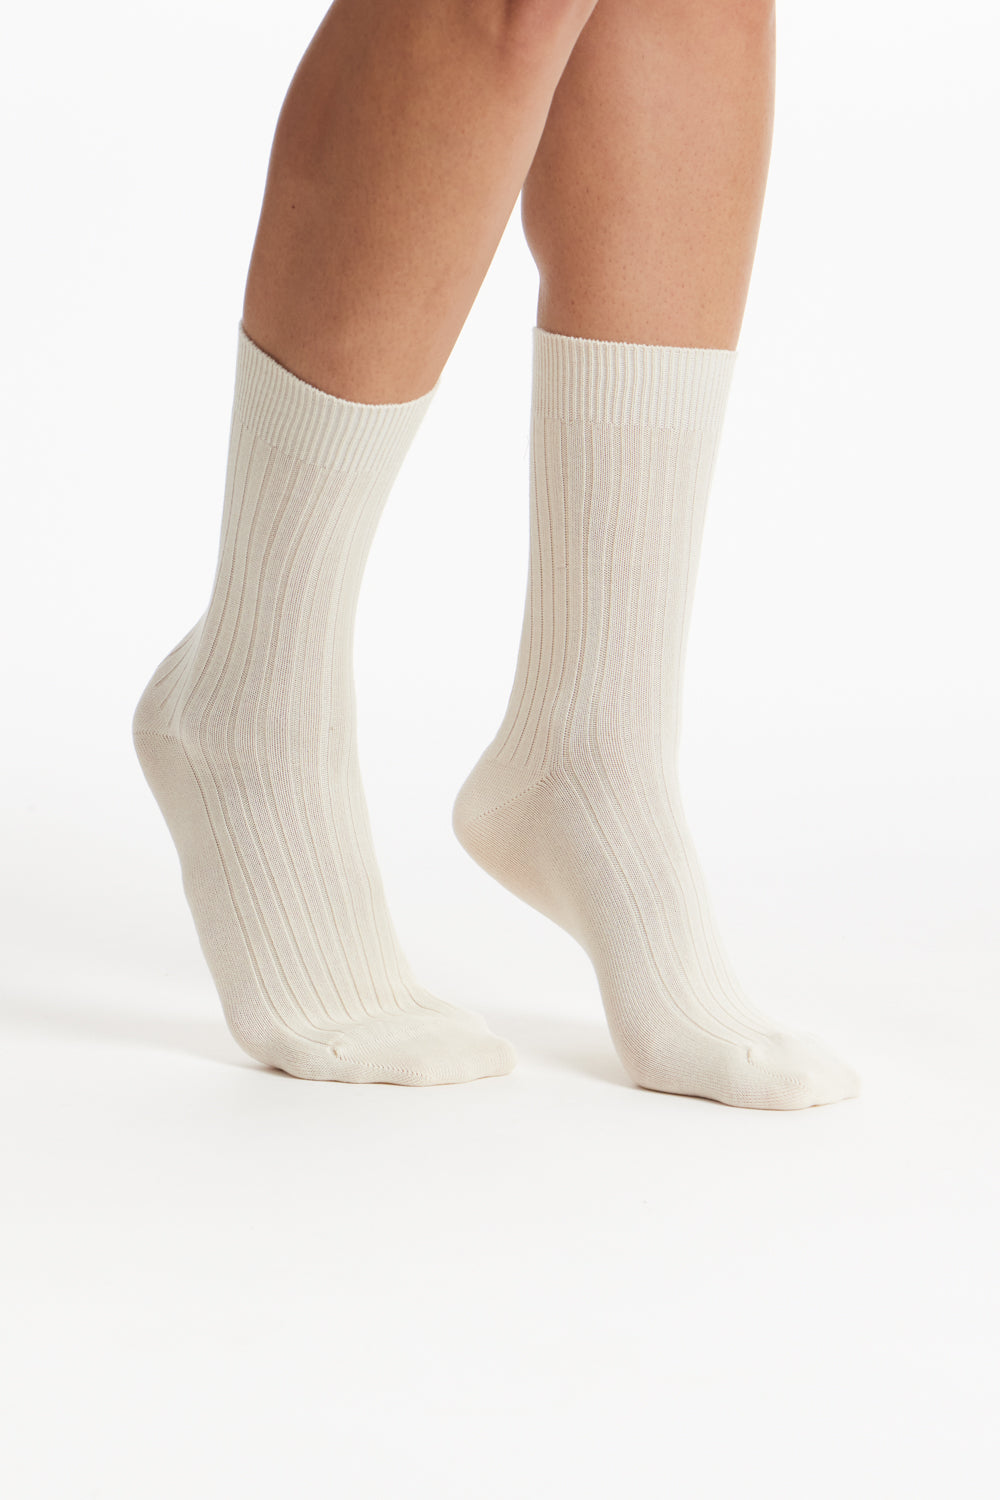 Organic Cotton Socks in Cream Rib